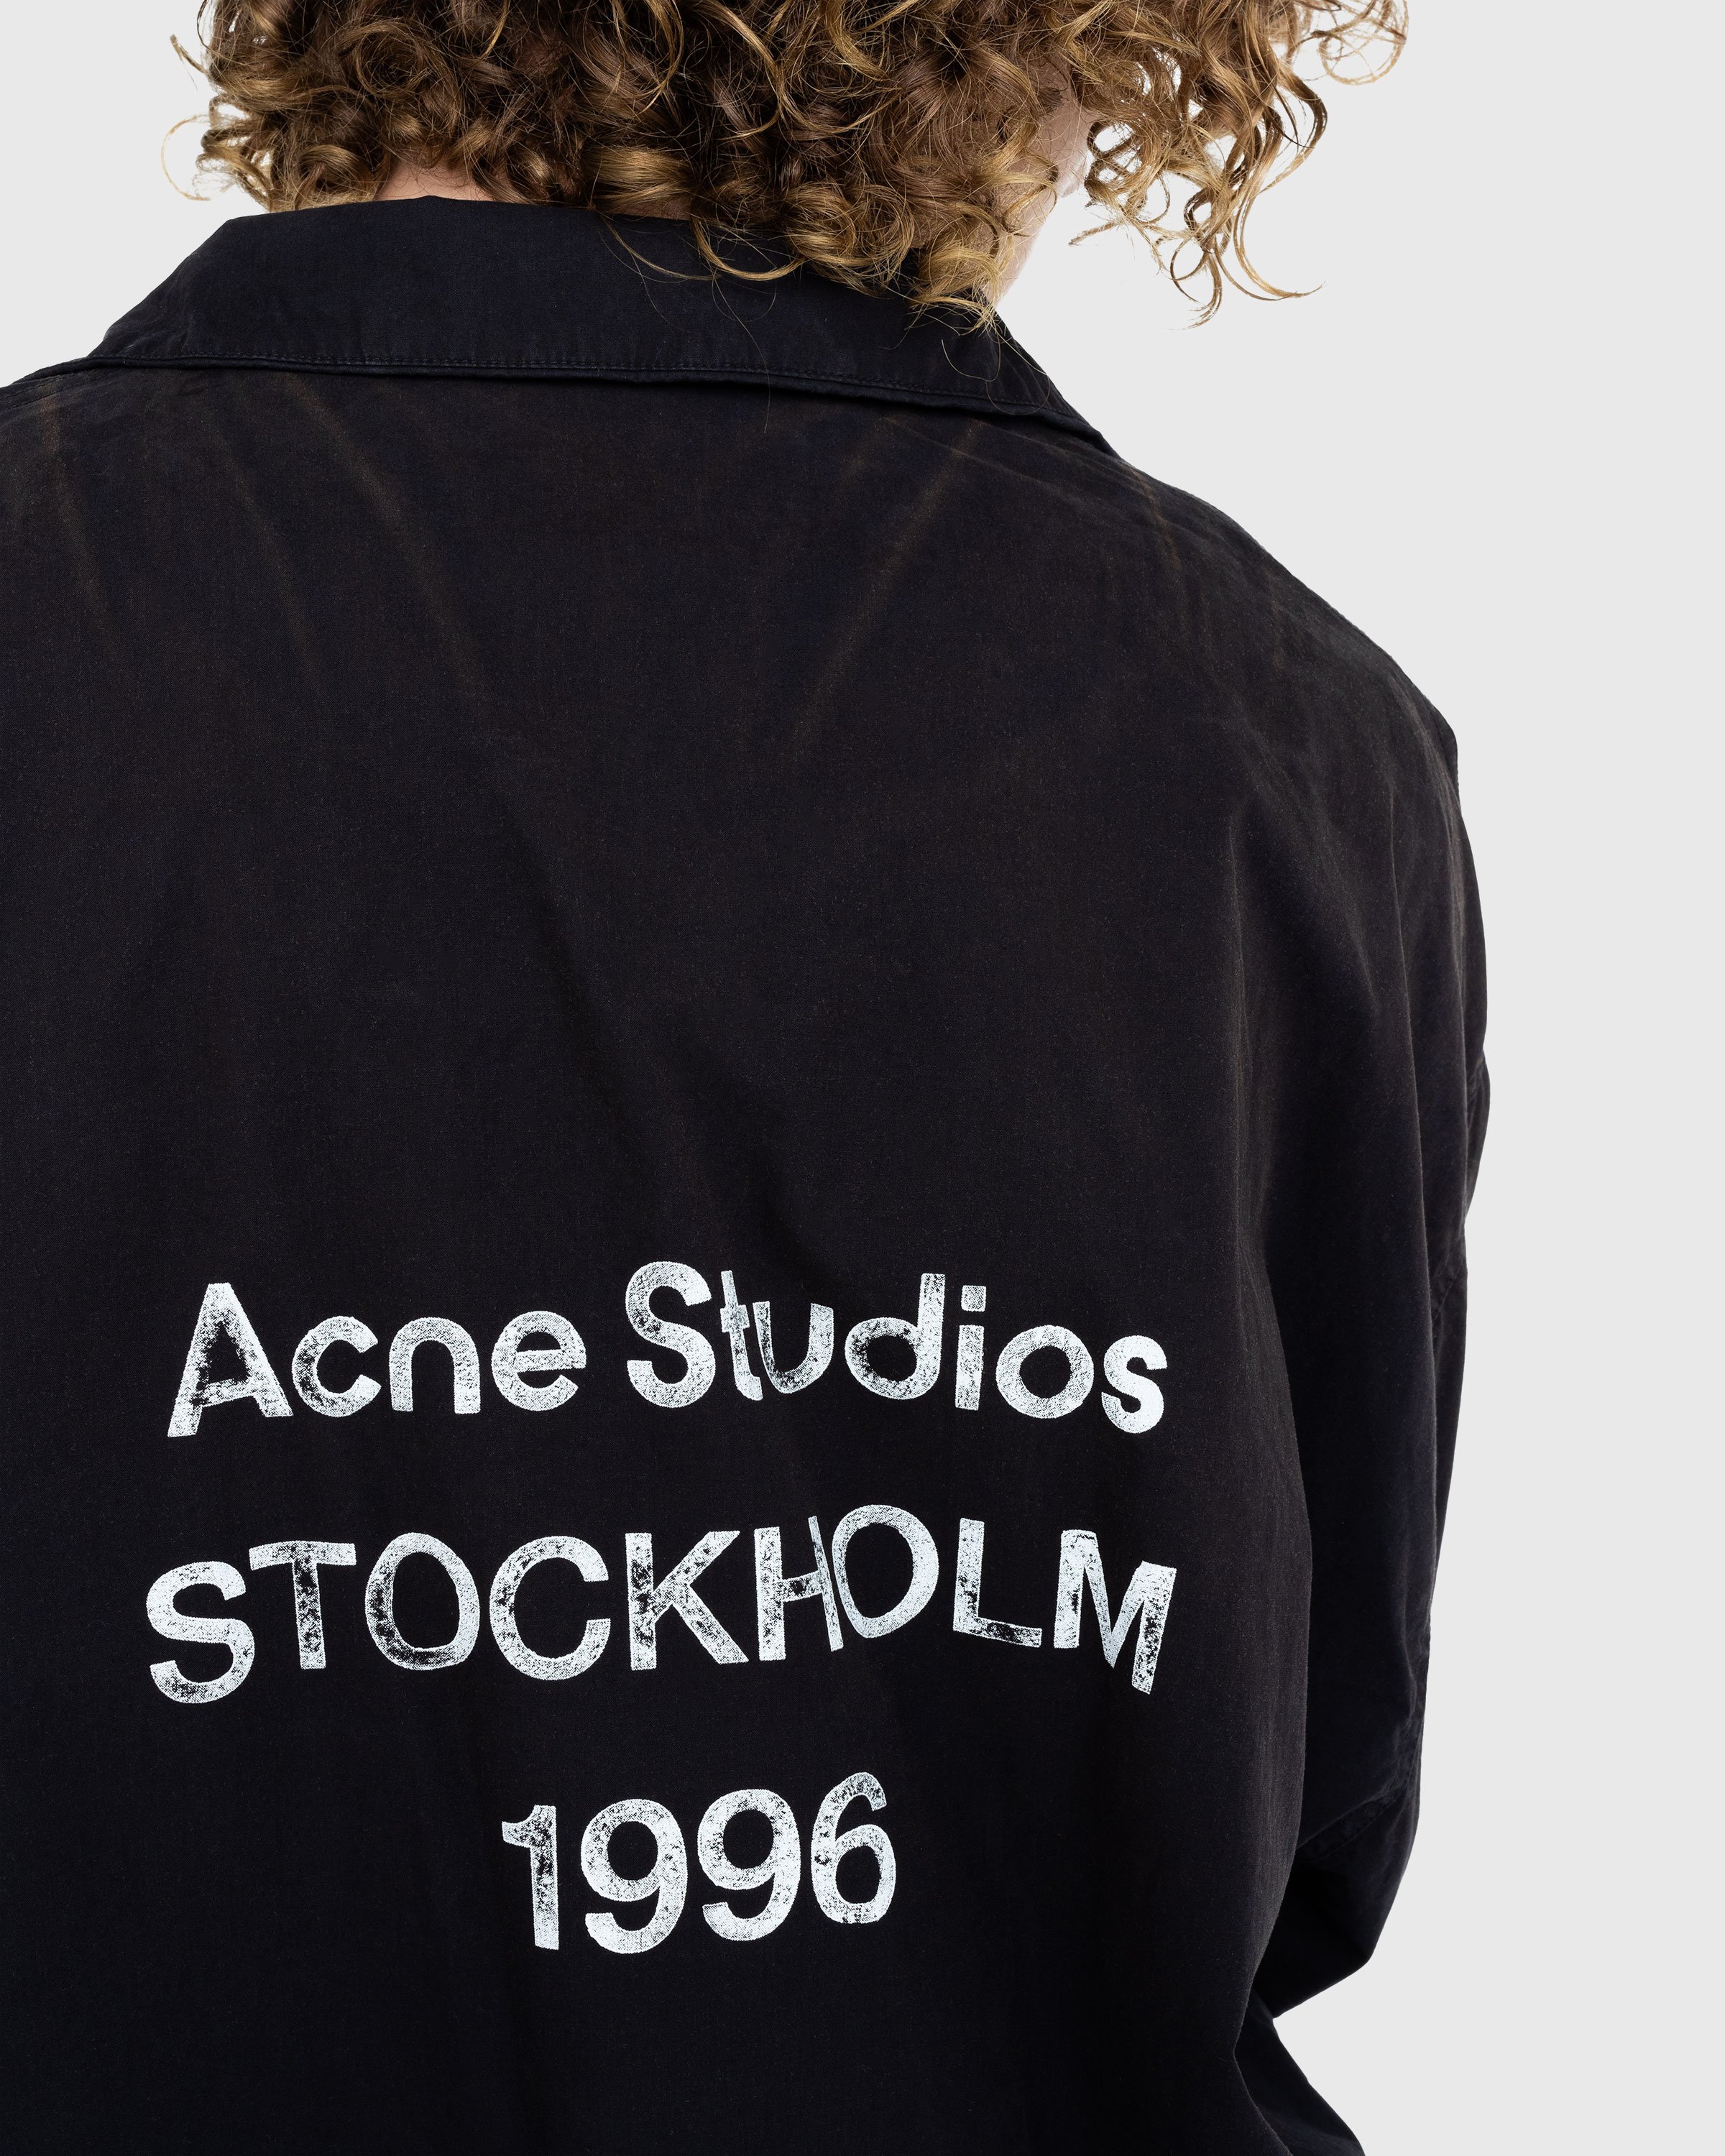 Acne Studios - Logo Zipper Jacket Black - Clothing - Black - Image 4